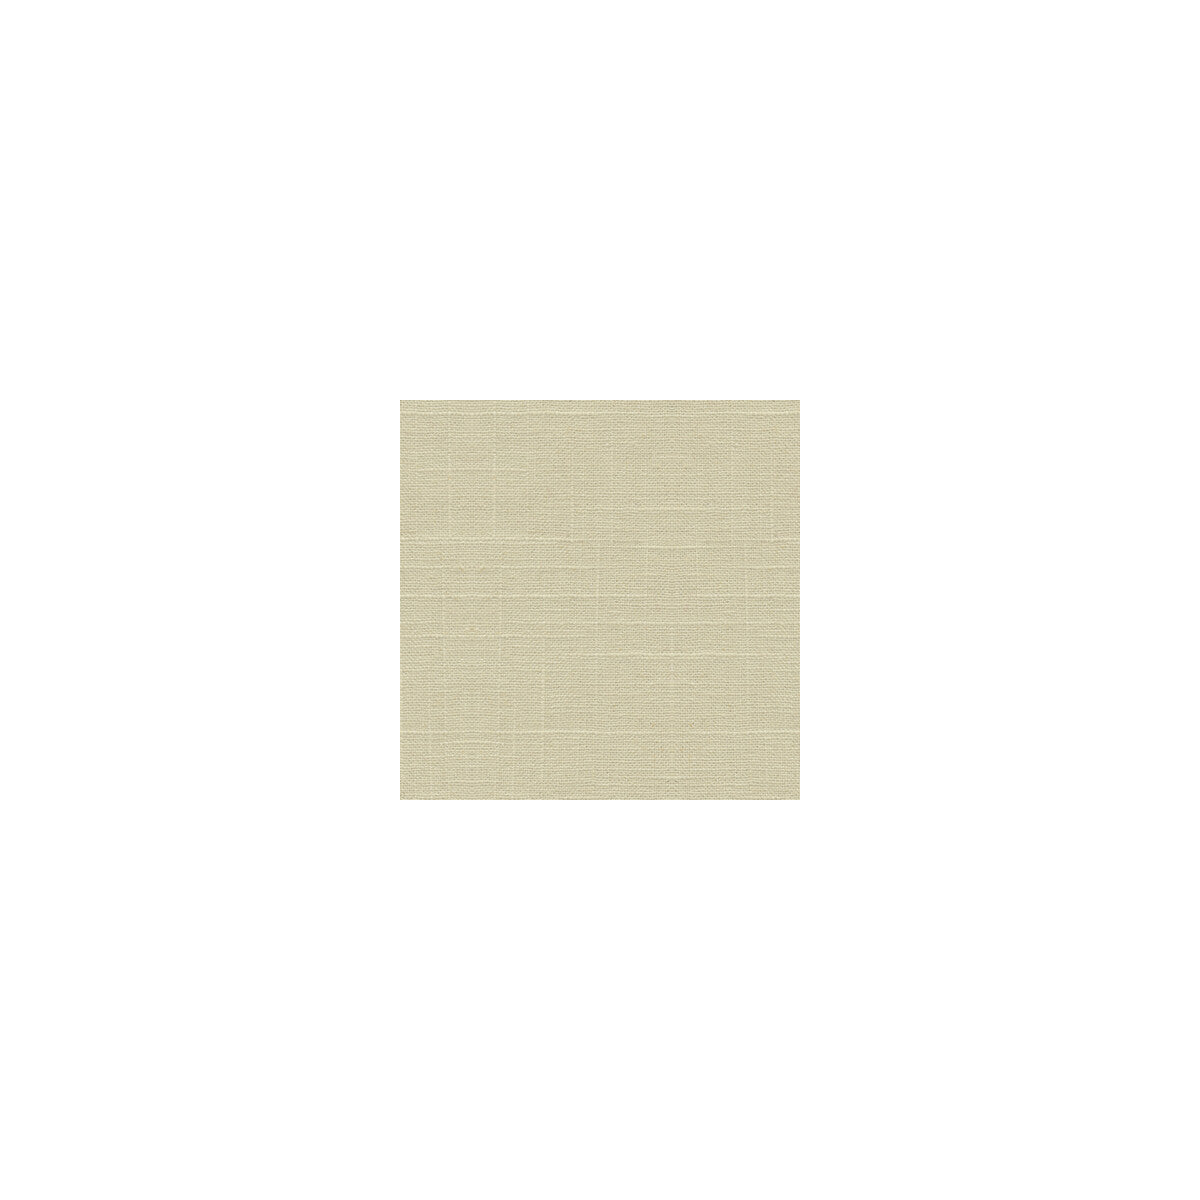 Kravet Basics fabric in 30808-1 color - pattern 30808.1.0 - by Kravet Basics